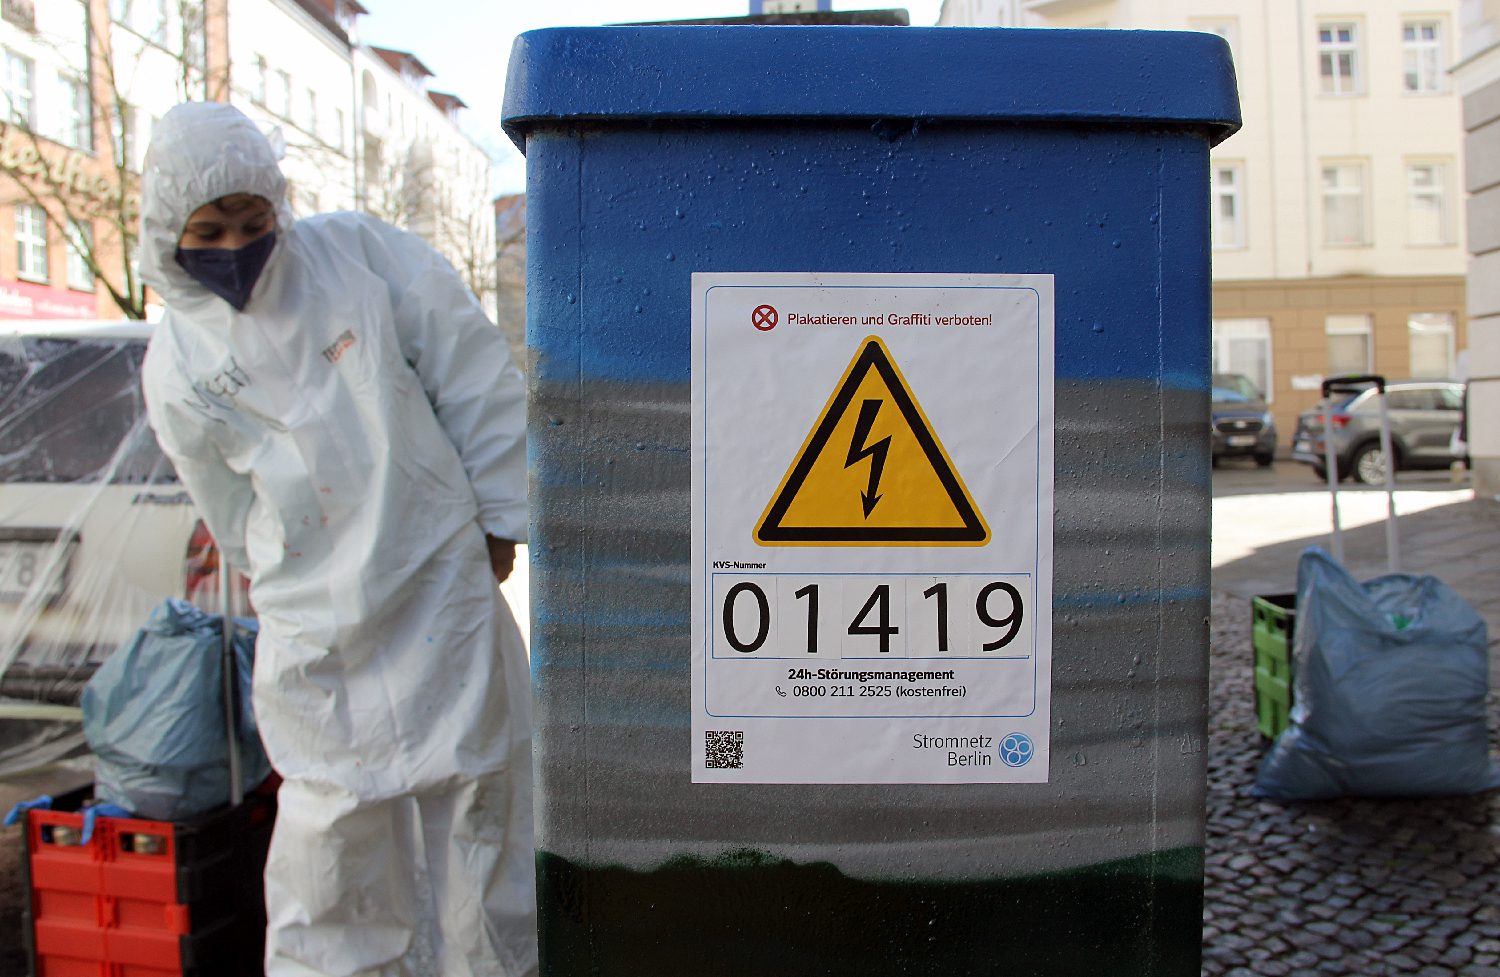 Jeder Stromkasten bekommt einen Aufkleber, damit er identifizierbar ist. Witzig: Der Aufkleber ermahnt "Plakatieren und Graffiti verboten!". Foto: Hensel